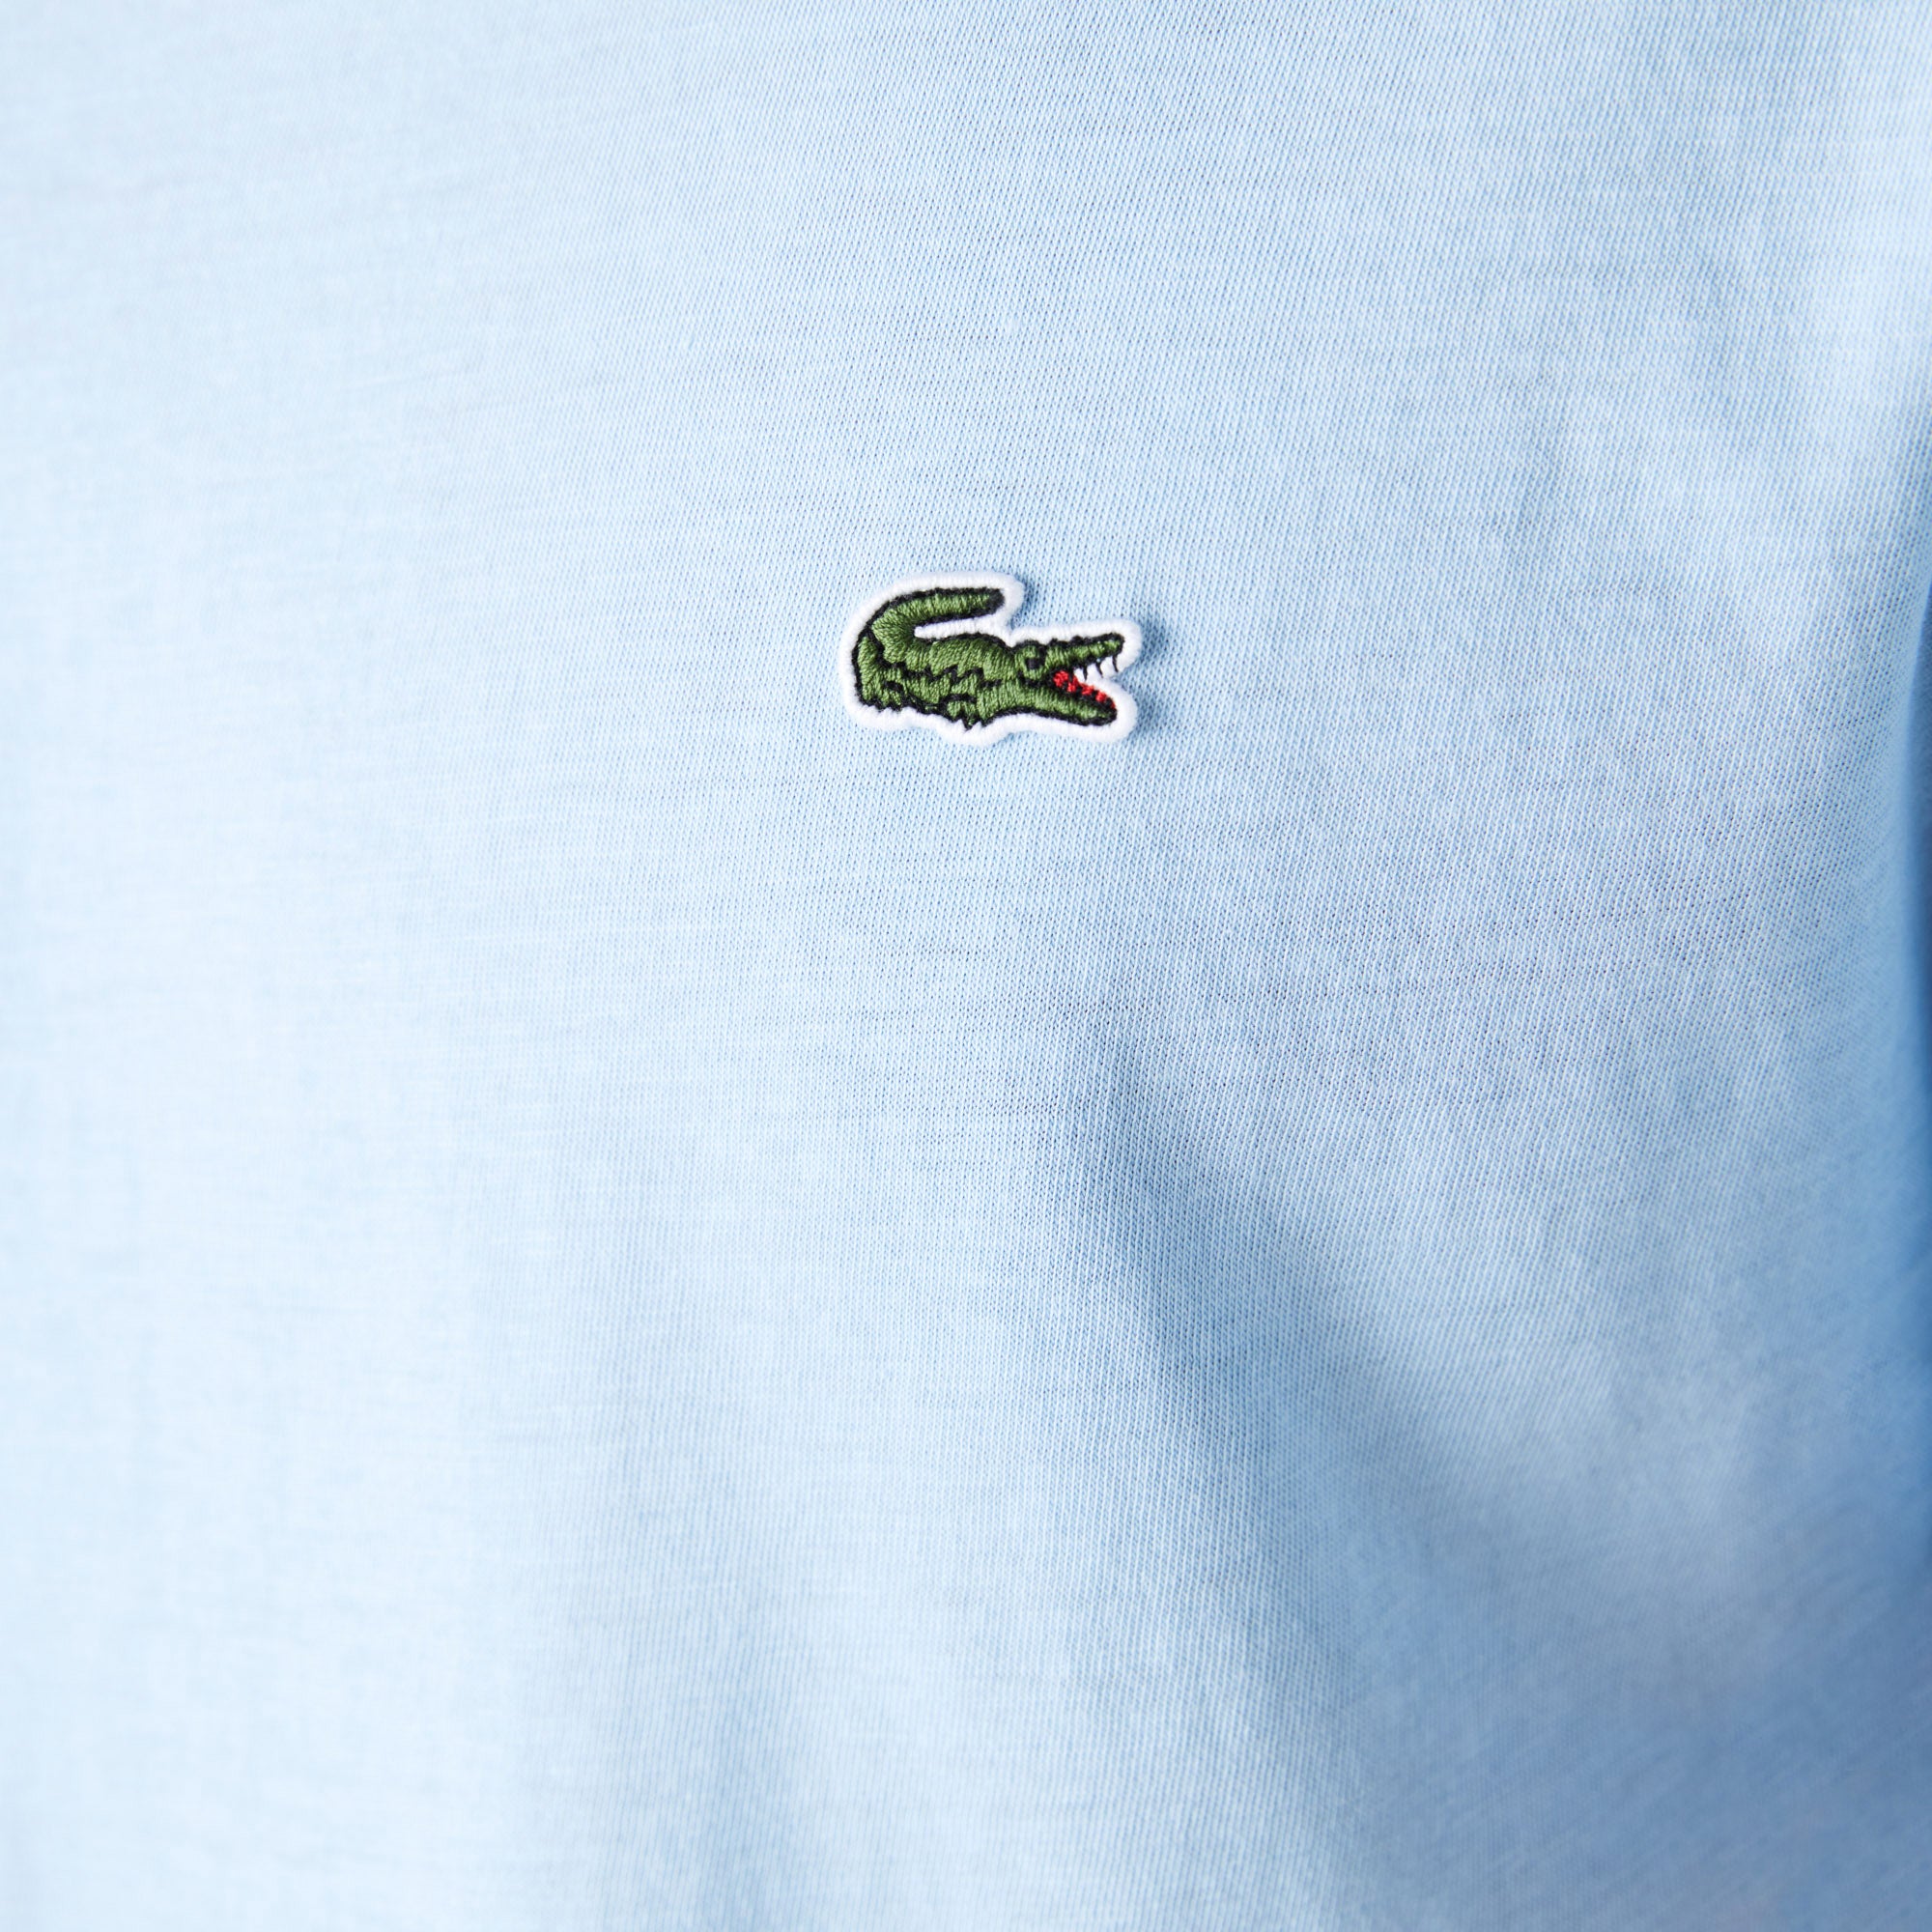 Lacoste Pima Cotton T-Shirt TH6709 - Overview Blue